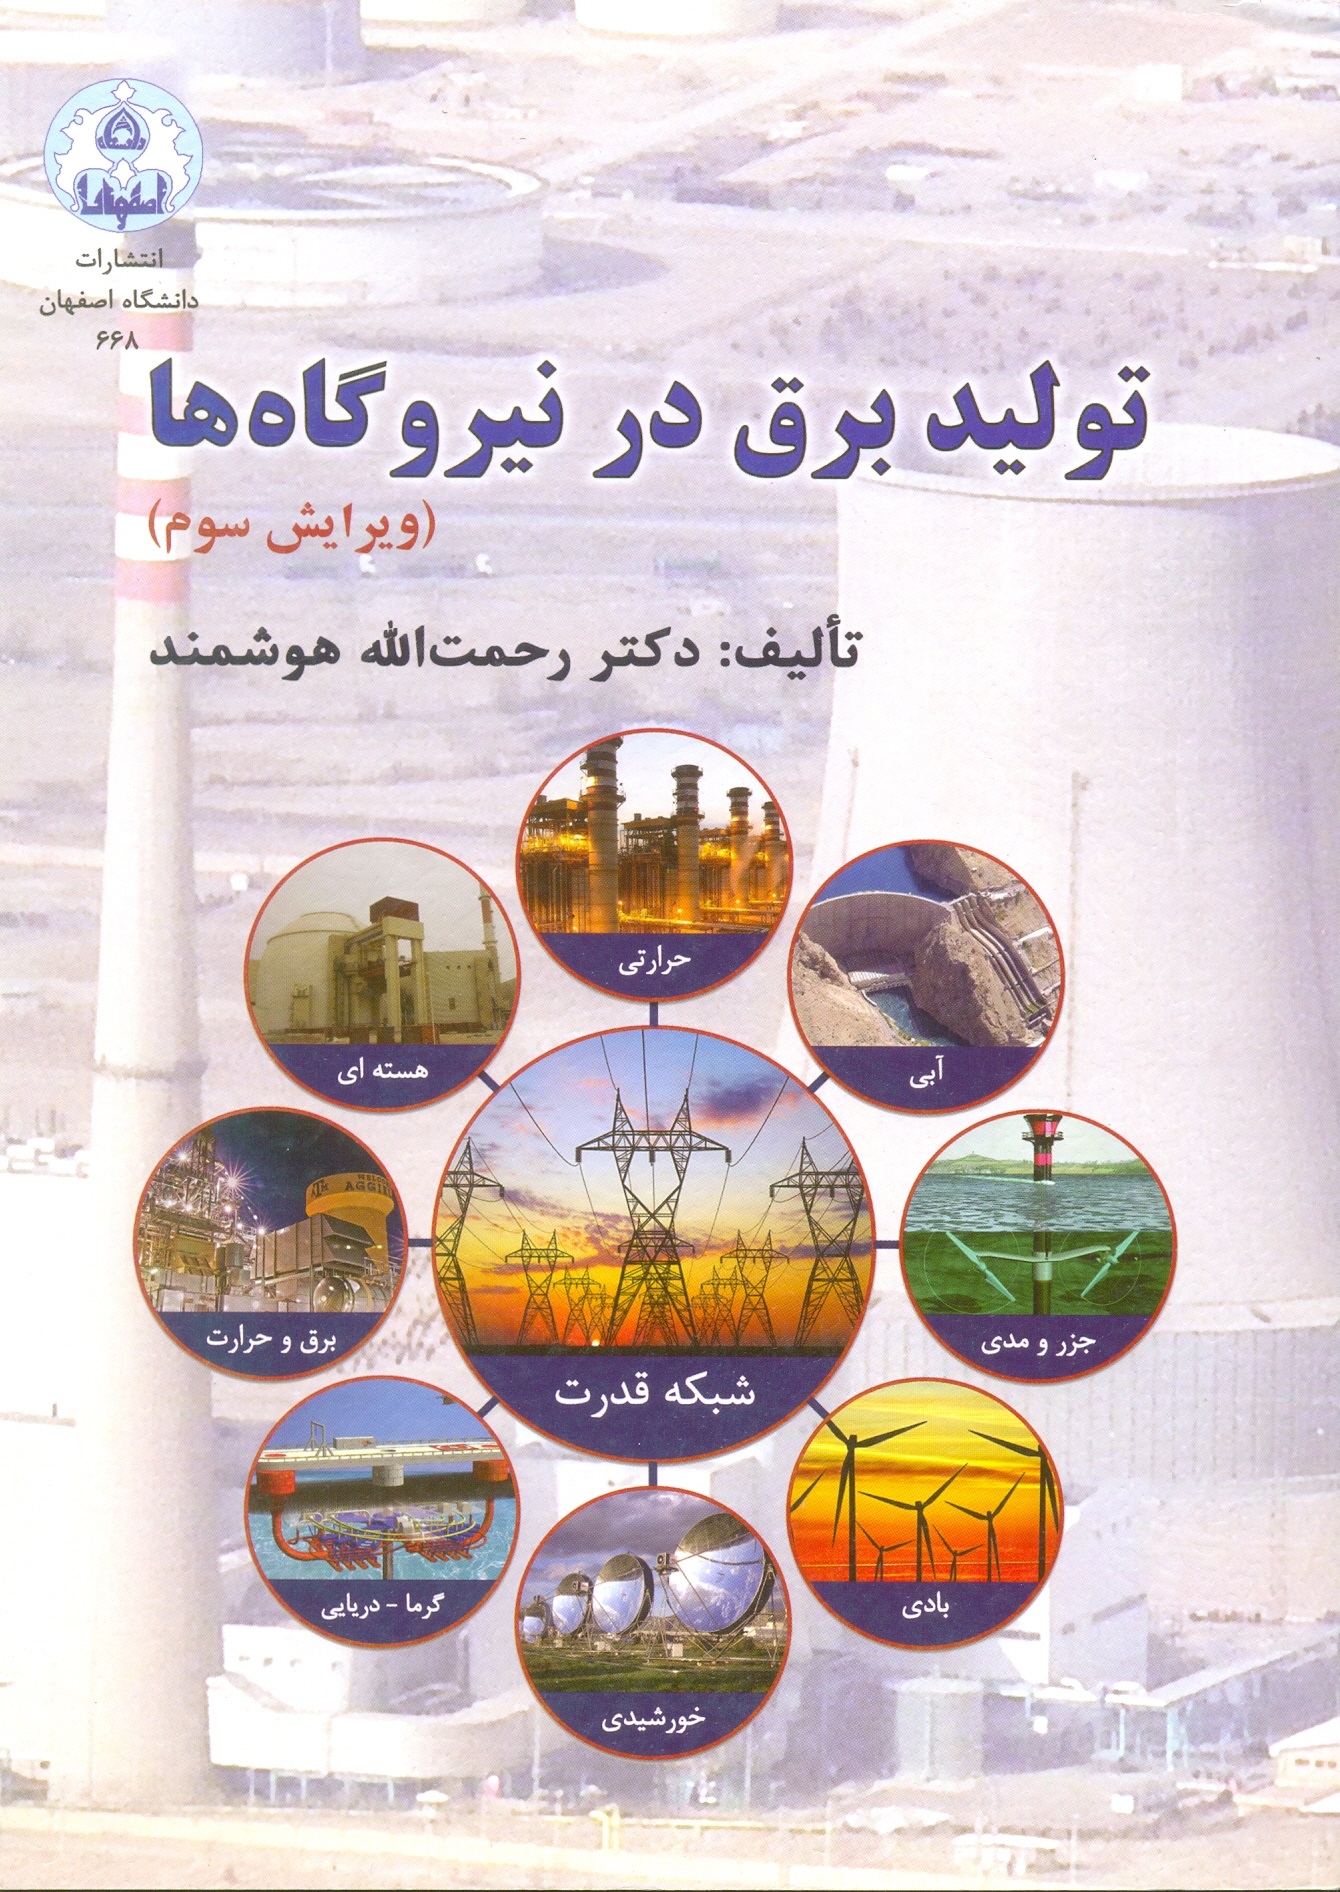 تولید برق در نیروگاه ها/هوشمند/دانشگاه اصفهان